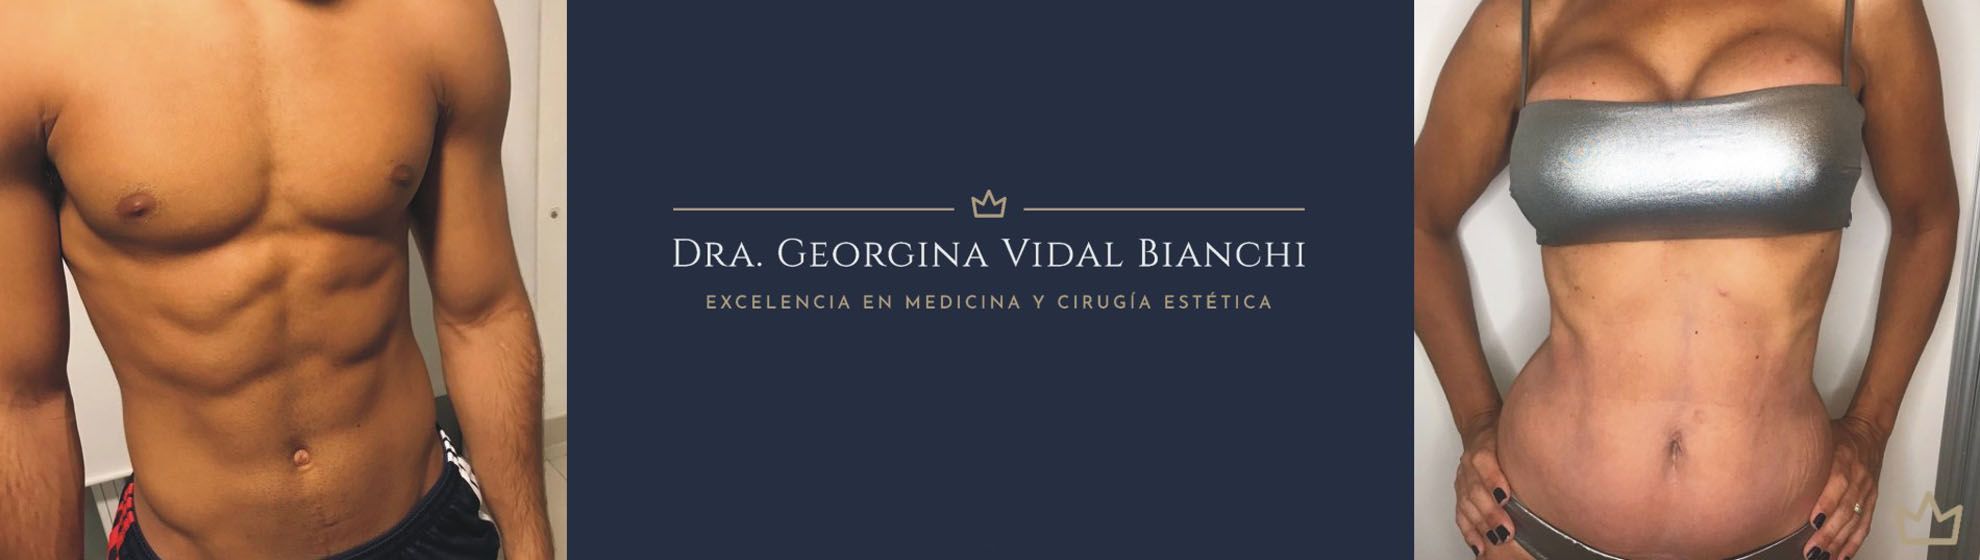 Dra. Georgina Vidal Bianchi